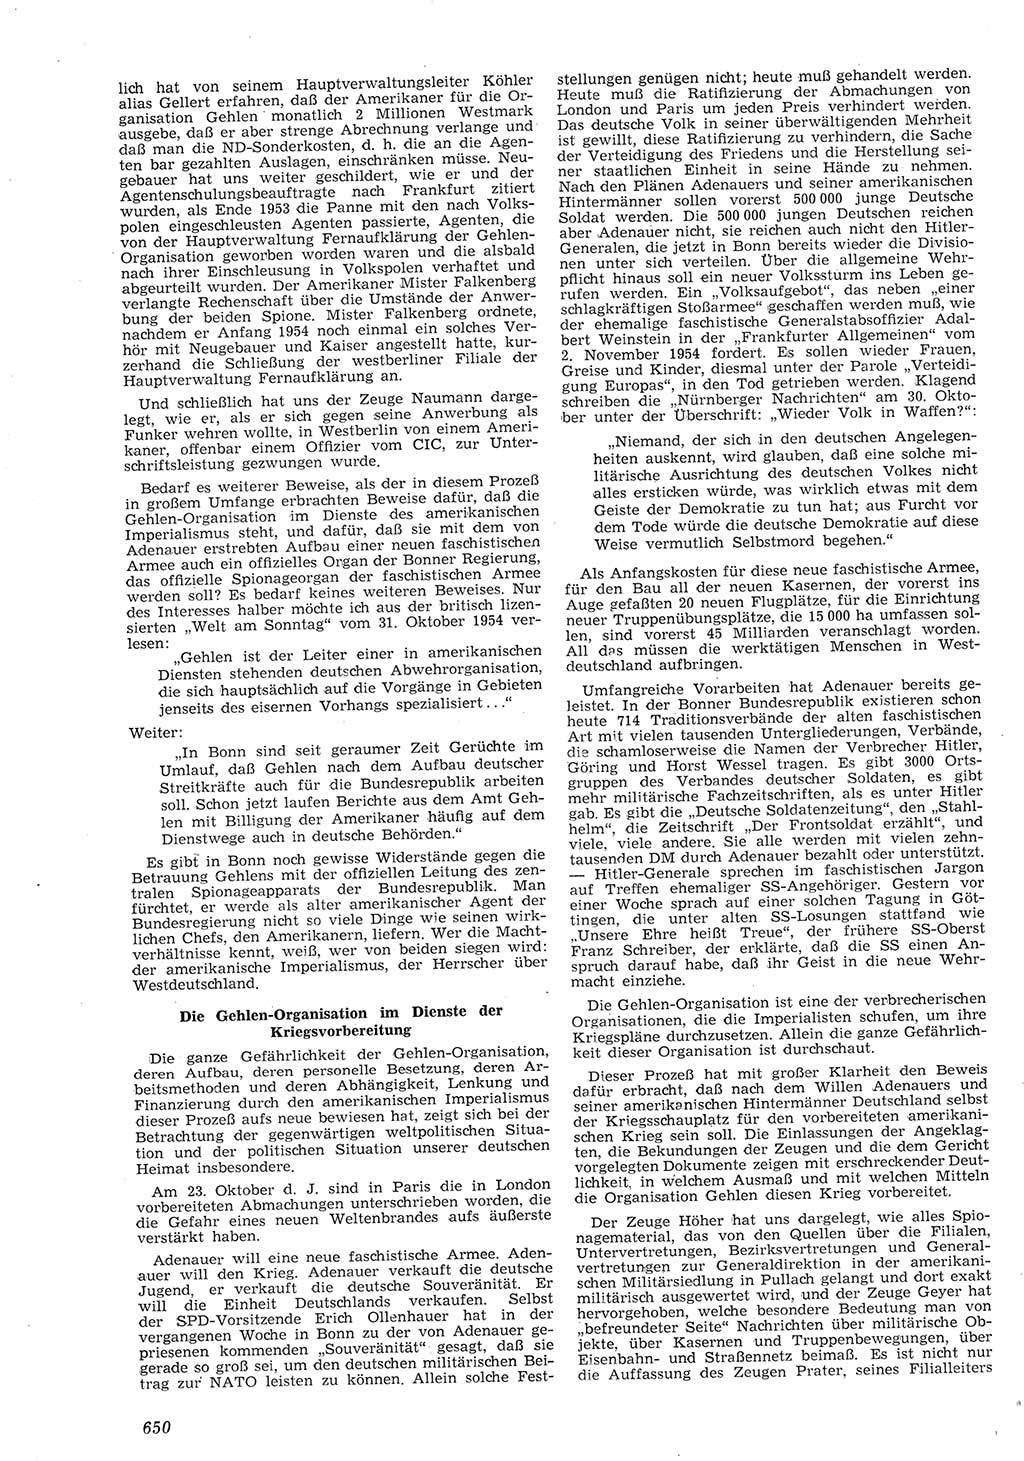 Neue Justiz (NJ), Zeitschrift für Recht und Rechtswissenschaft [Deutsche Demokratische Republik (DDR)], 8. Jahrgang 1954, Seite 650 (NJ DDR 1954, S. 650)